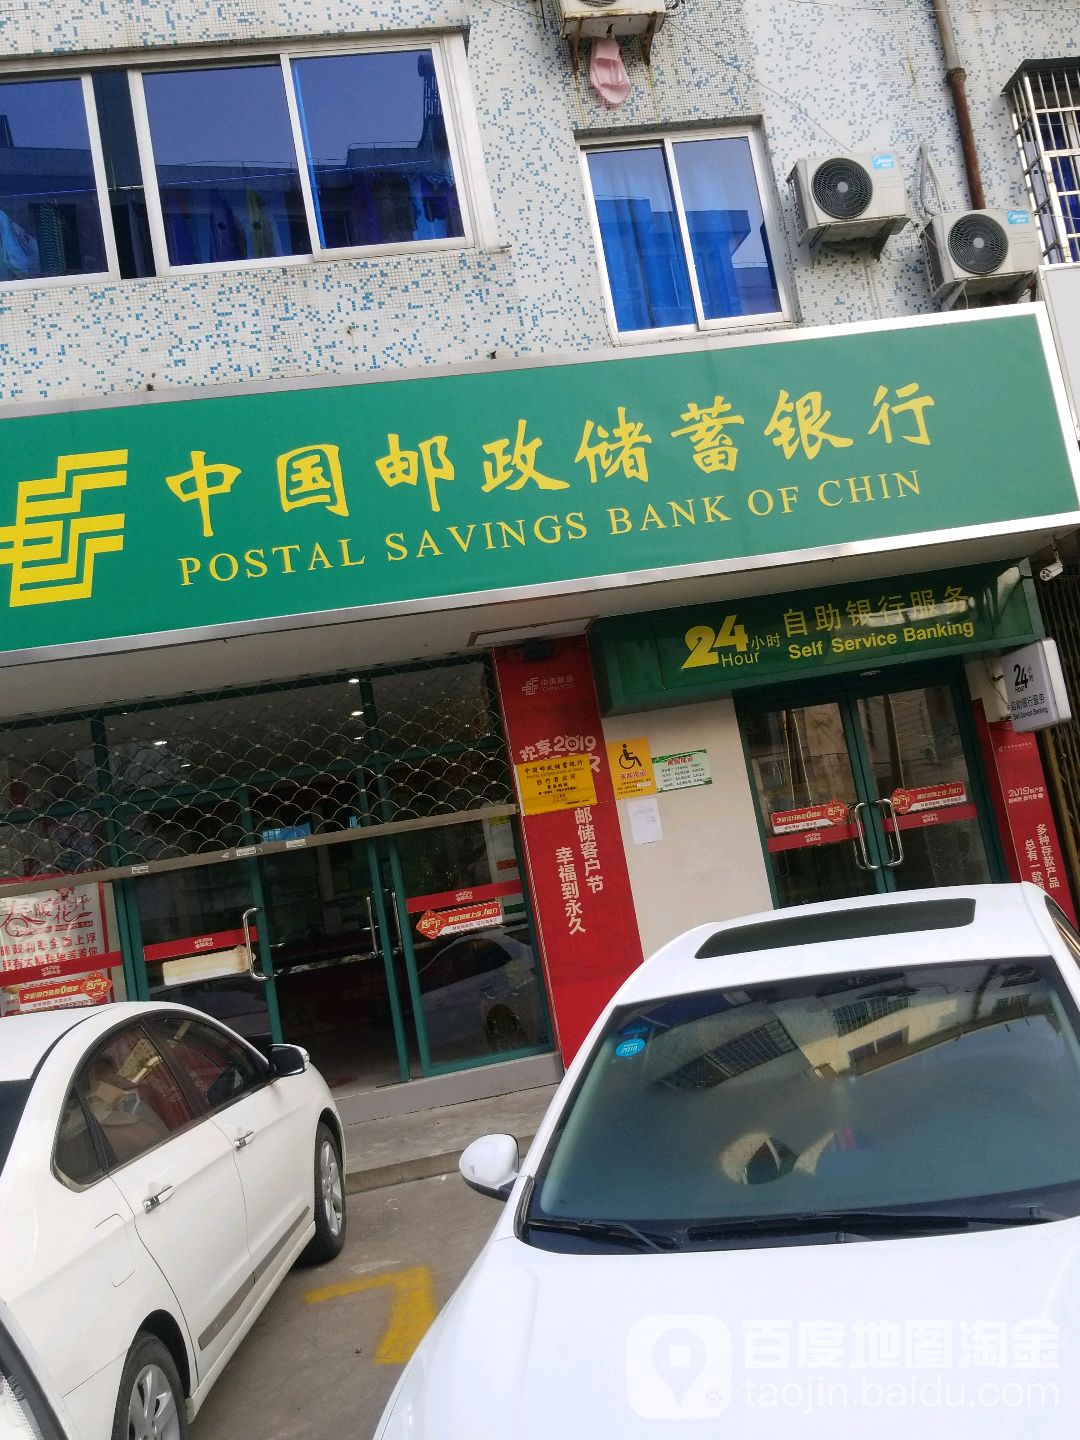 中國郵政儲蓄銀行(松竹郵局營業部)